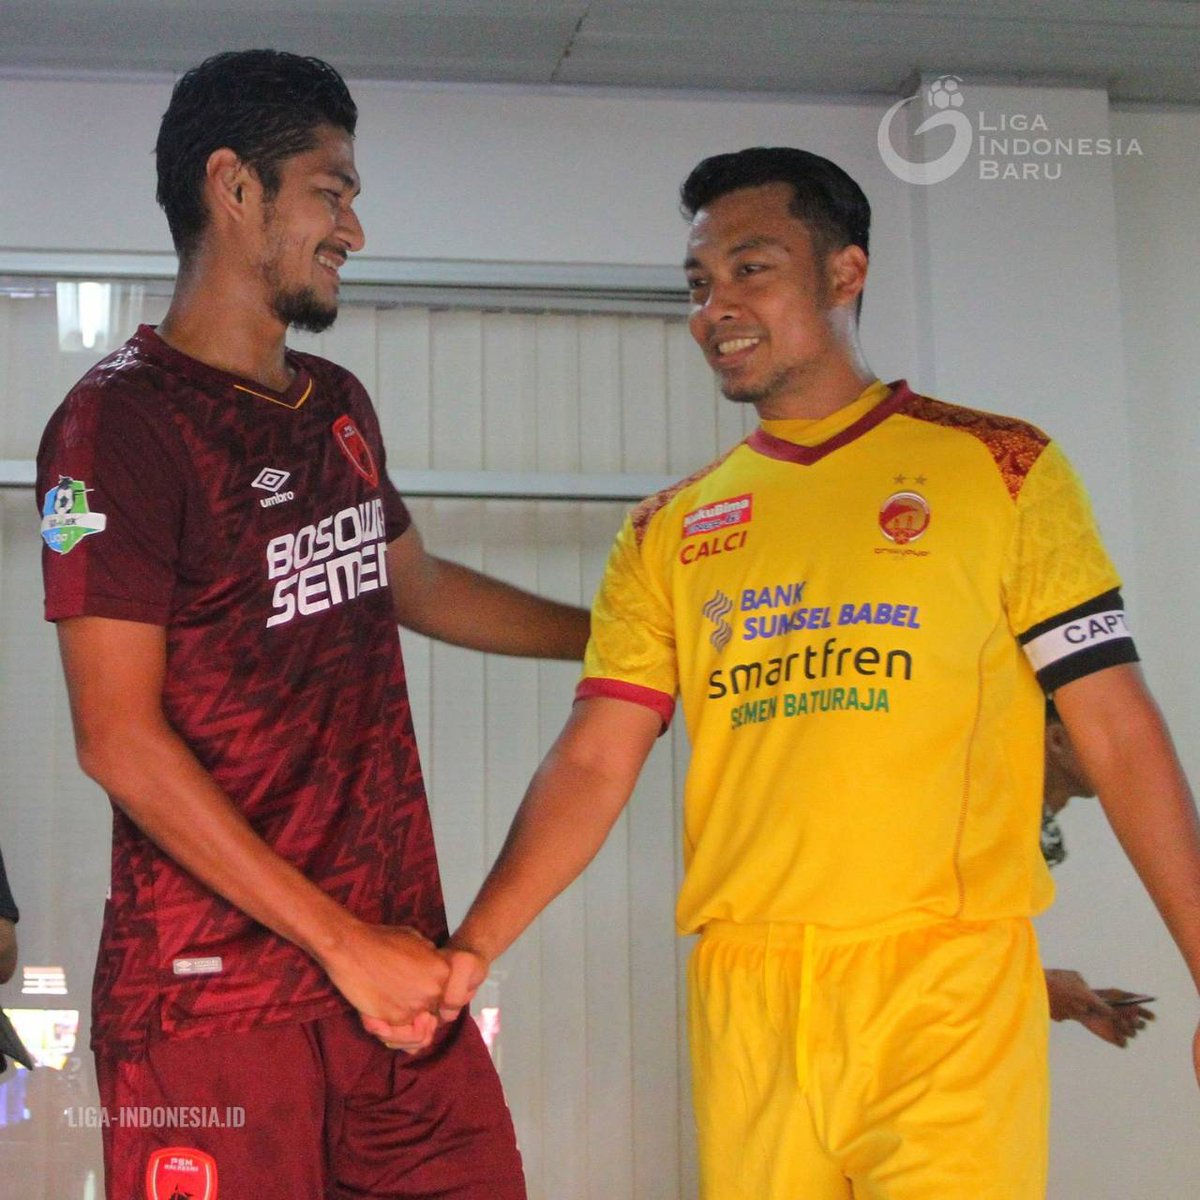 Walau berbeda kostum, dua pemain asal Sulawesi Selatan ini tetap respek satu sama lain ☺️🤝😁

#SRWJvPSM
#GoJekLiga1
#Liga1KitaSatu